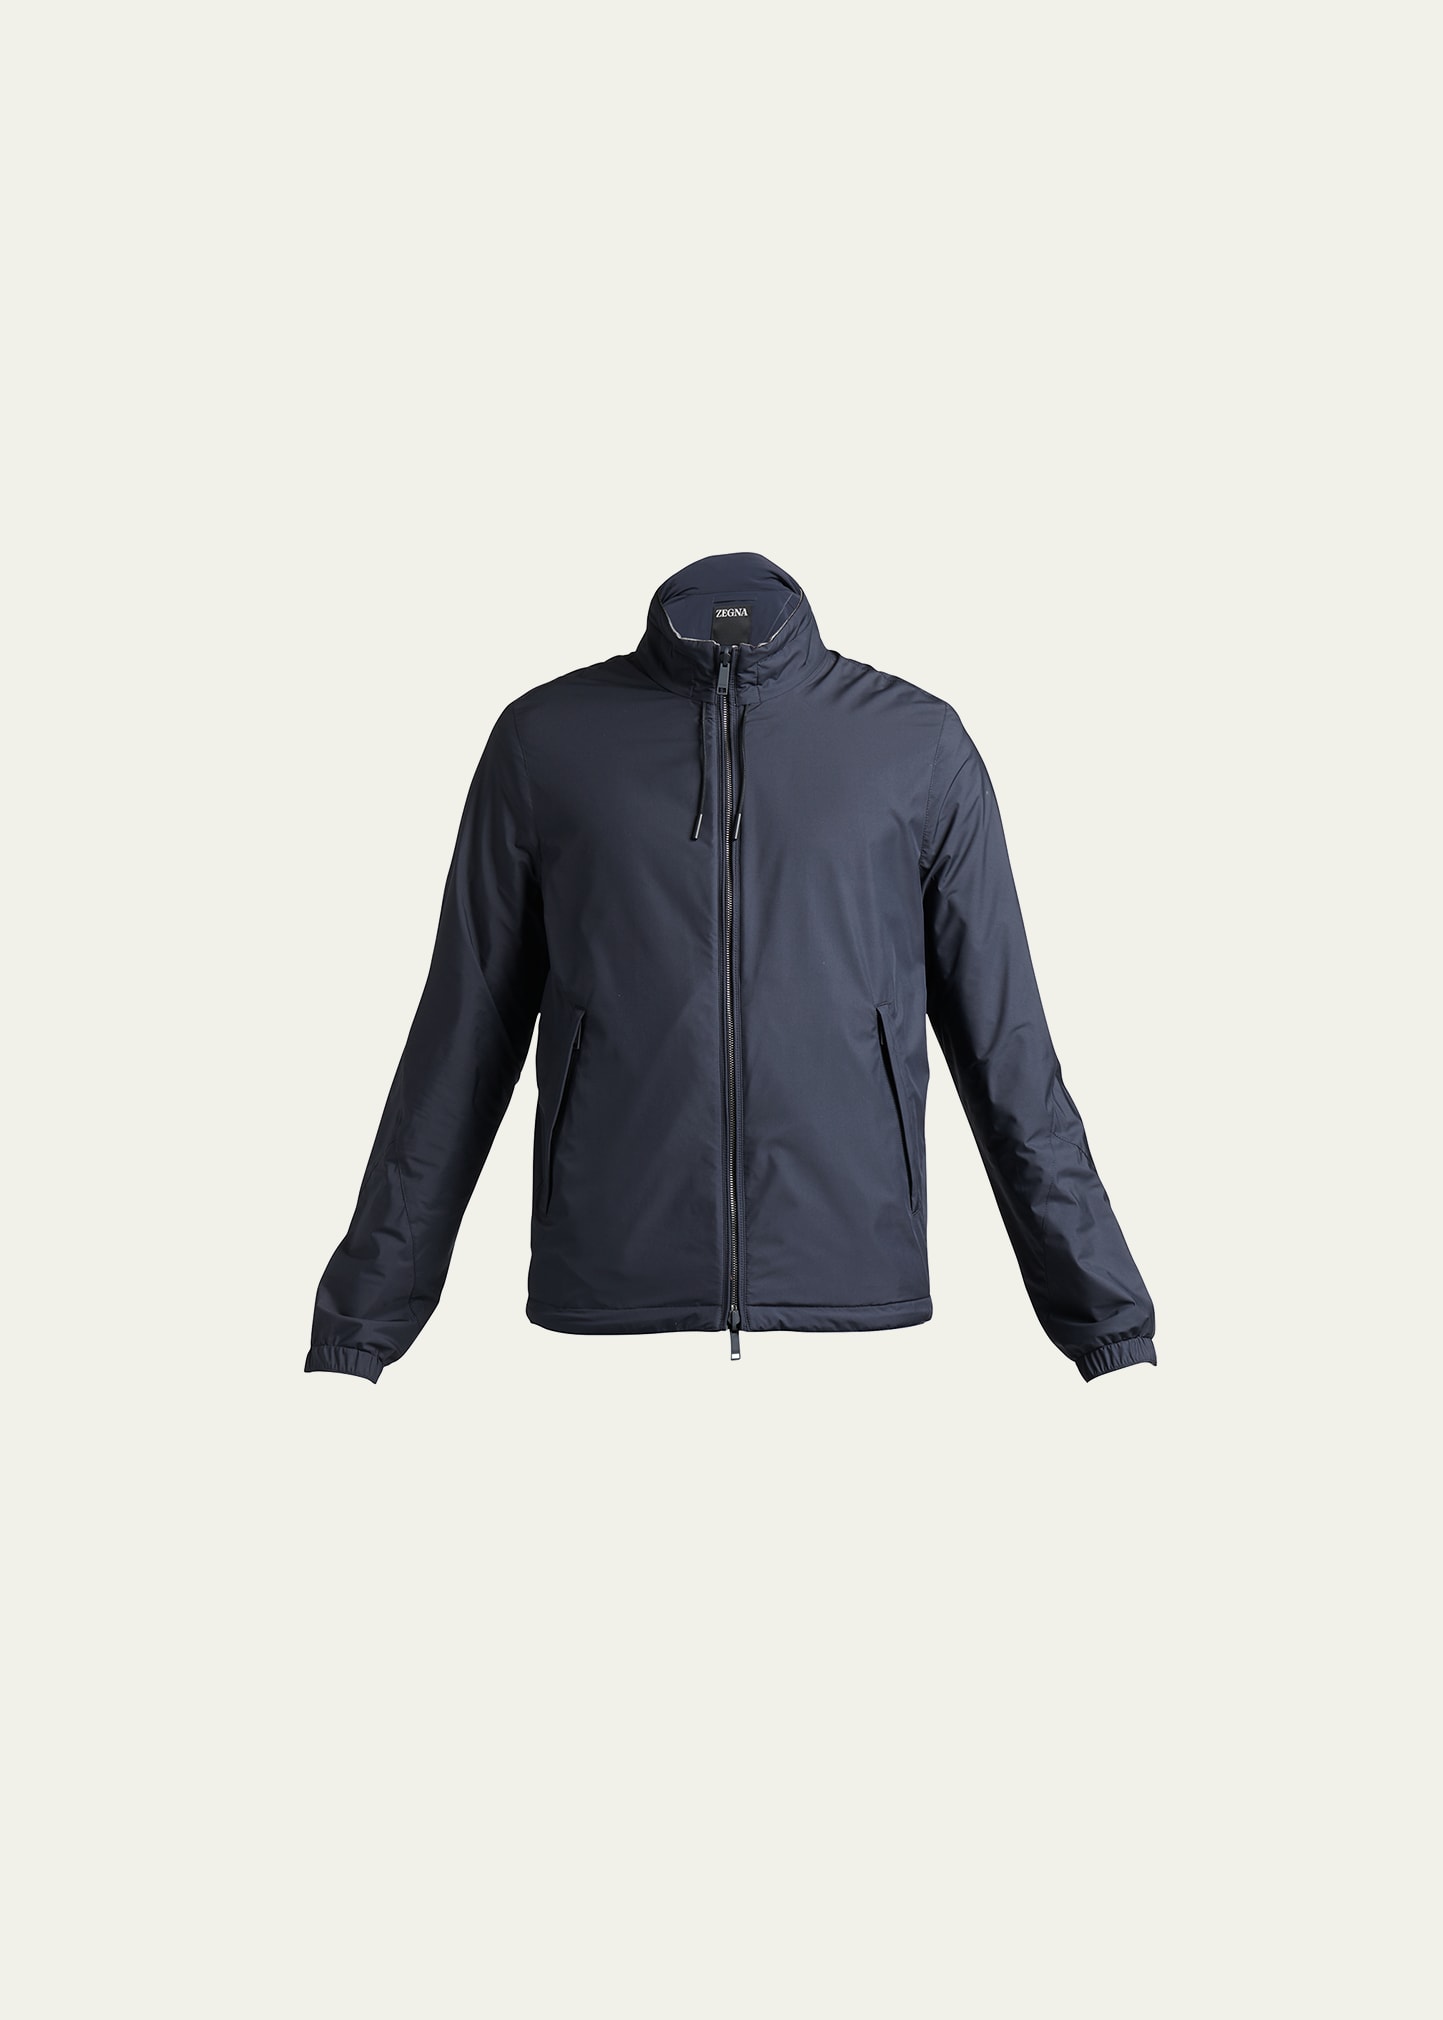 Zegna Men's Reversible Full-zip Blouson Jacket In Nvy Sld